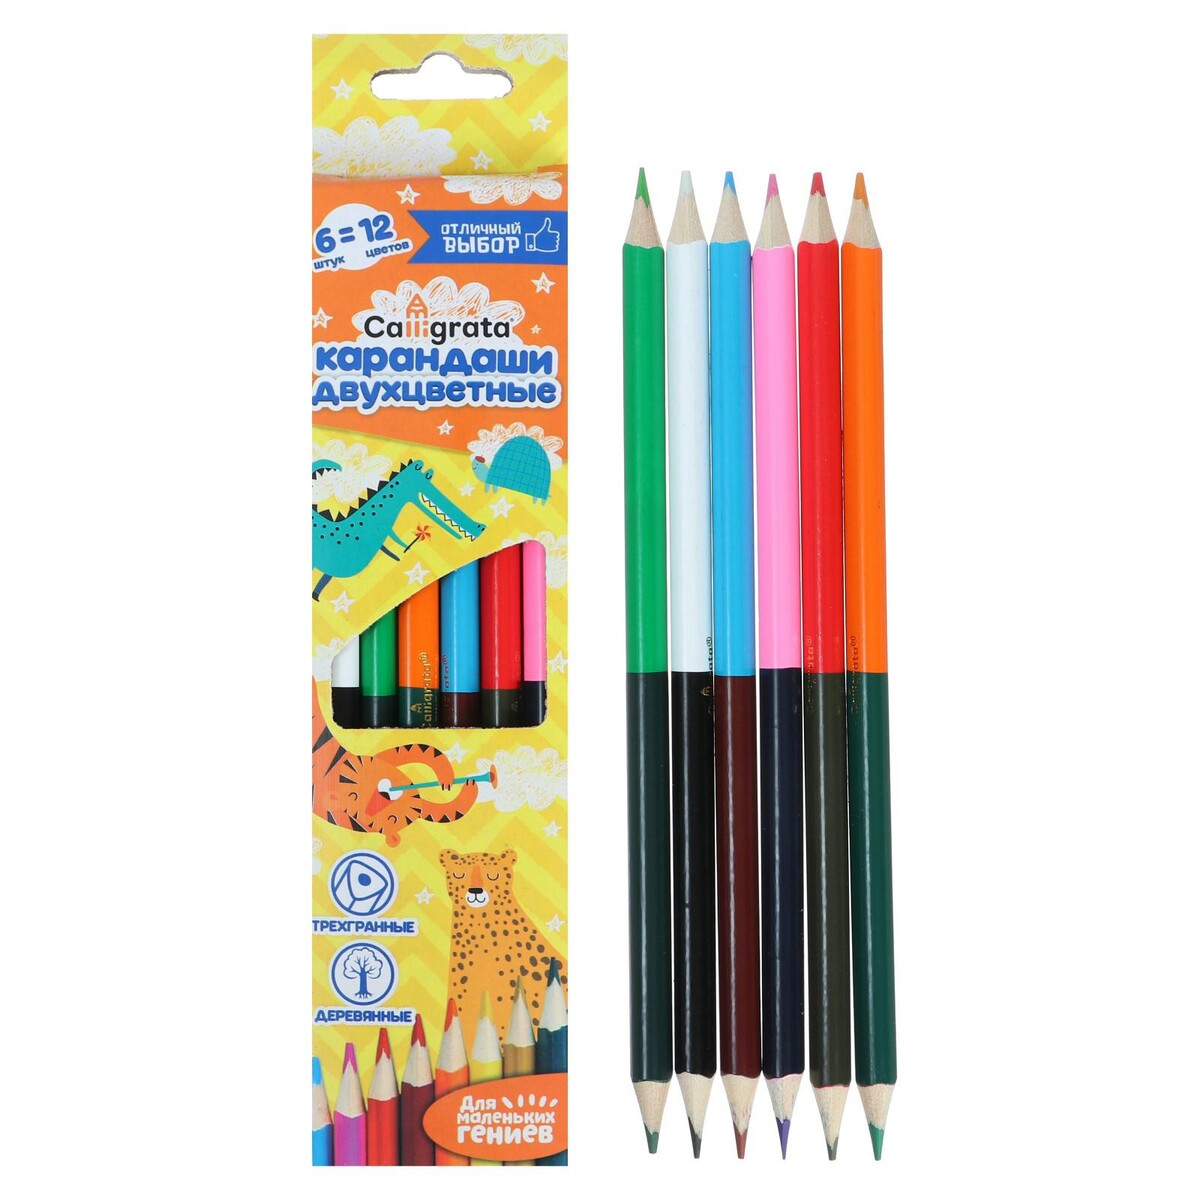 Карандаши двухцветные 12 цветов, 6 штук, корпус деревянный, треугольный, в картонной коробке ные карандаши berlingo двух ные 12 штук